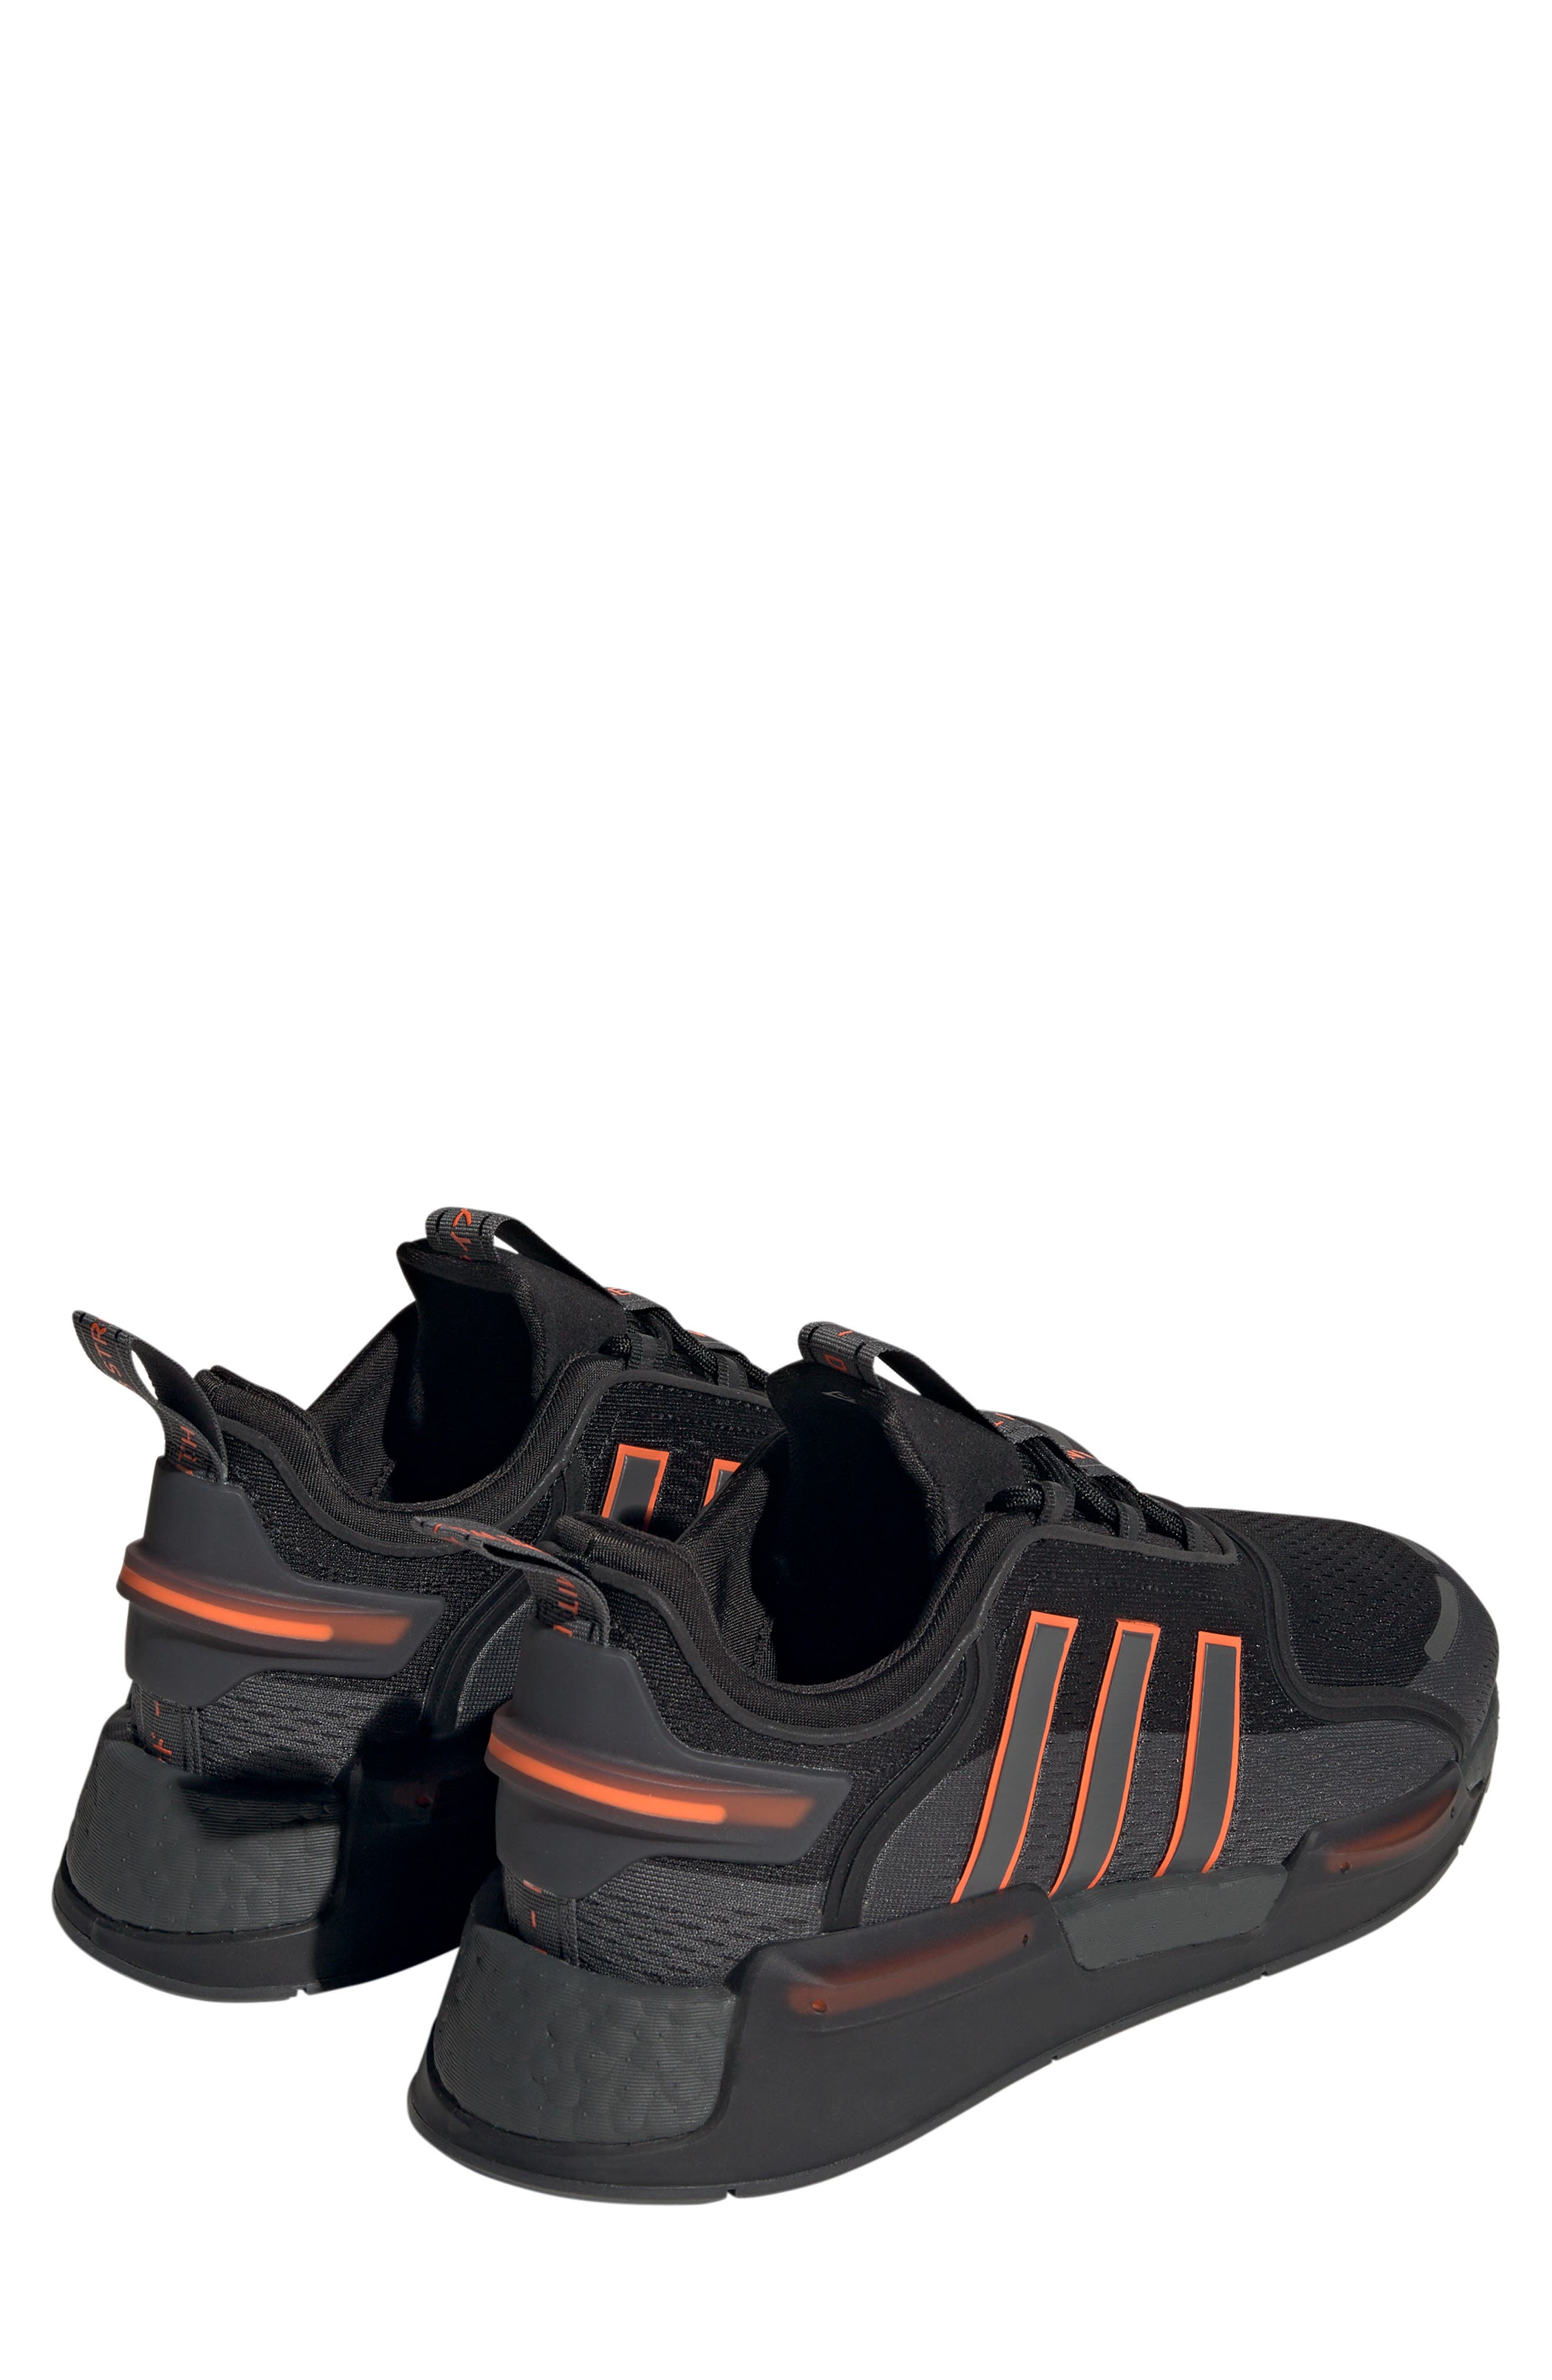 adidas NMD_V3 Shoes - Orange, Men's Lifestyle